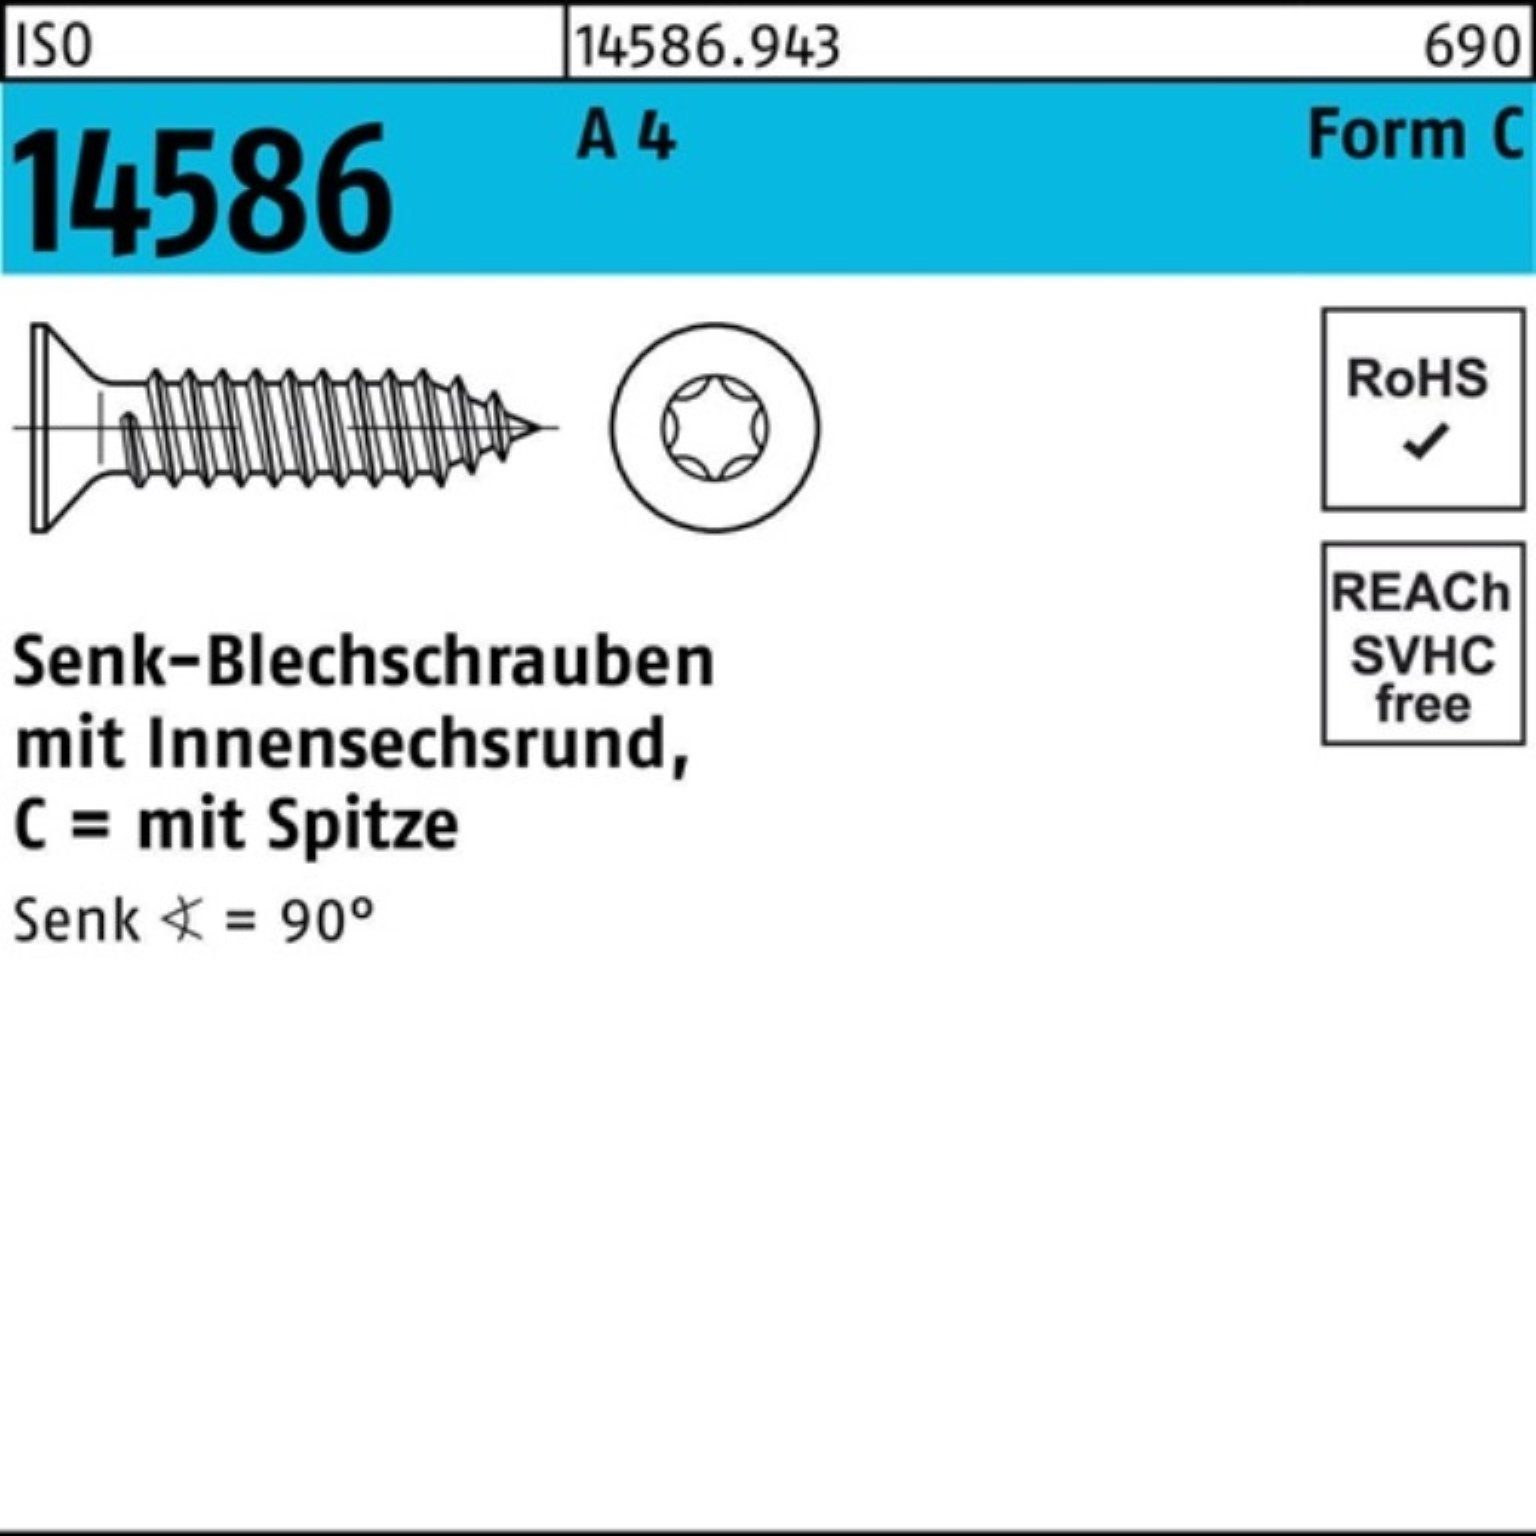 Reyher Schraube 500er Pack Senkblechschraube ISO 14586 ISR/Spitze 4,2x 32-T20 A 4 500